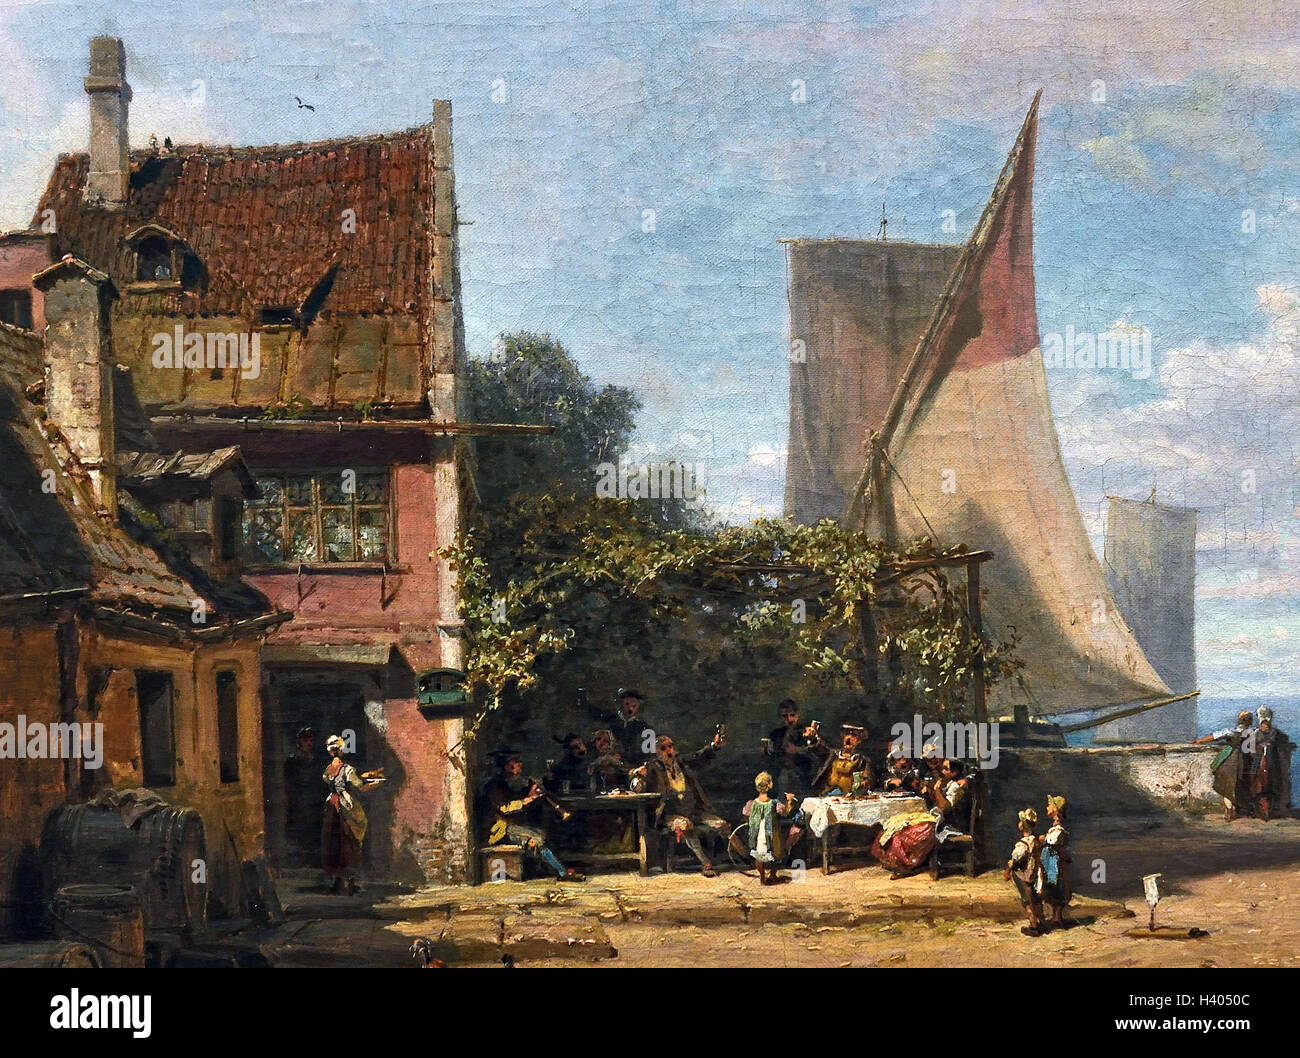 Vieille taverne près du Lac de Starnberg 1865 Carl Spitzweg 1808-1885 Allemagne Allemagne Banque D'Images